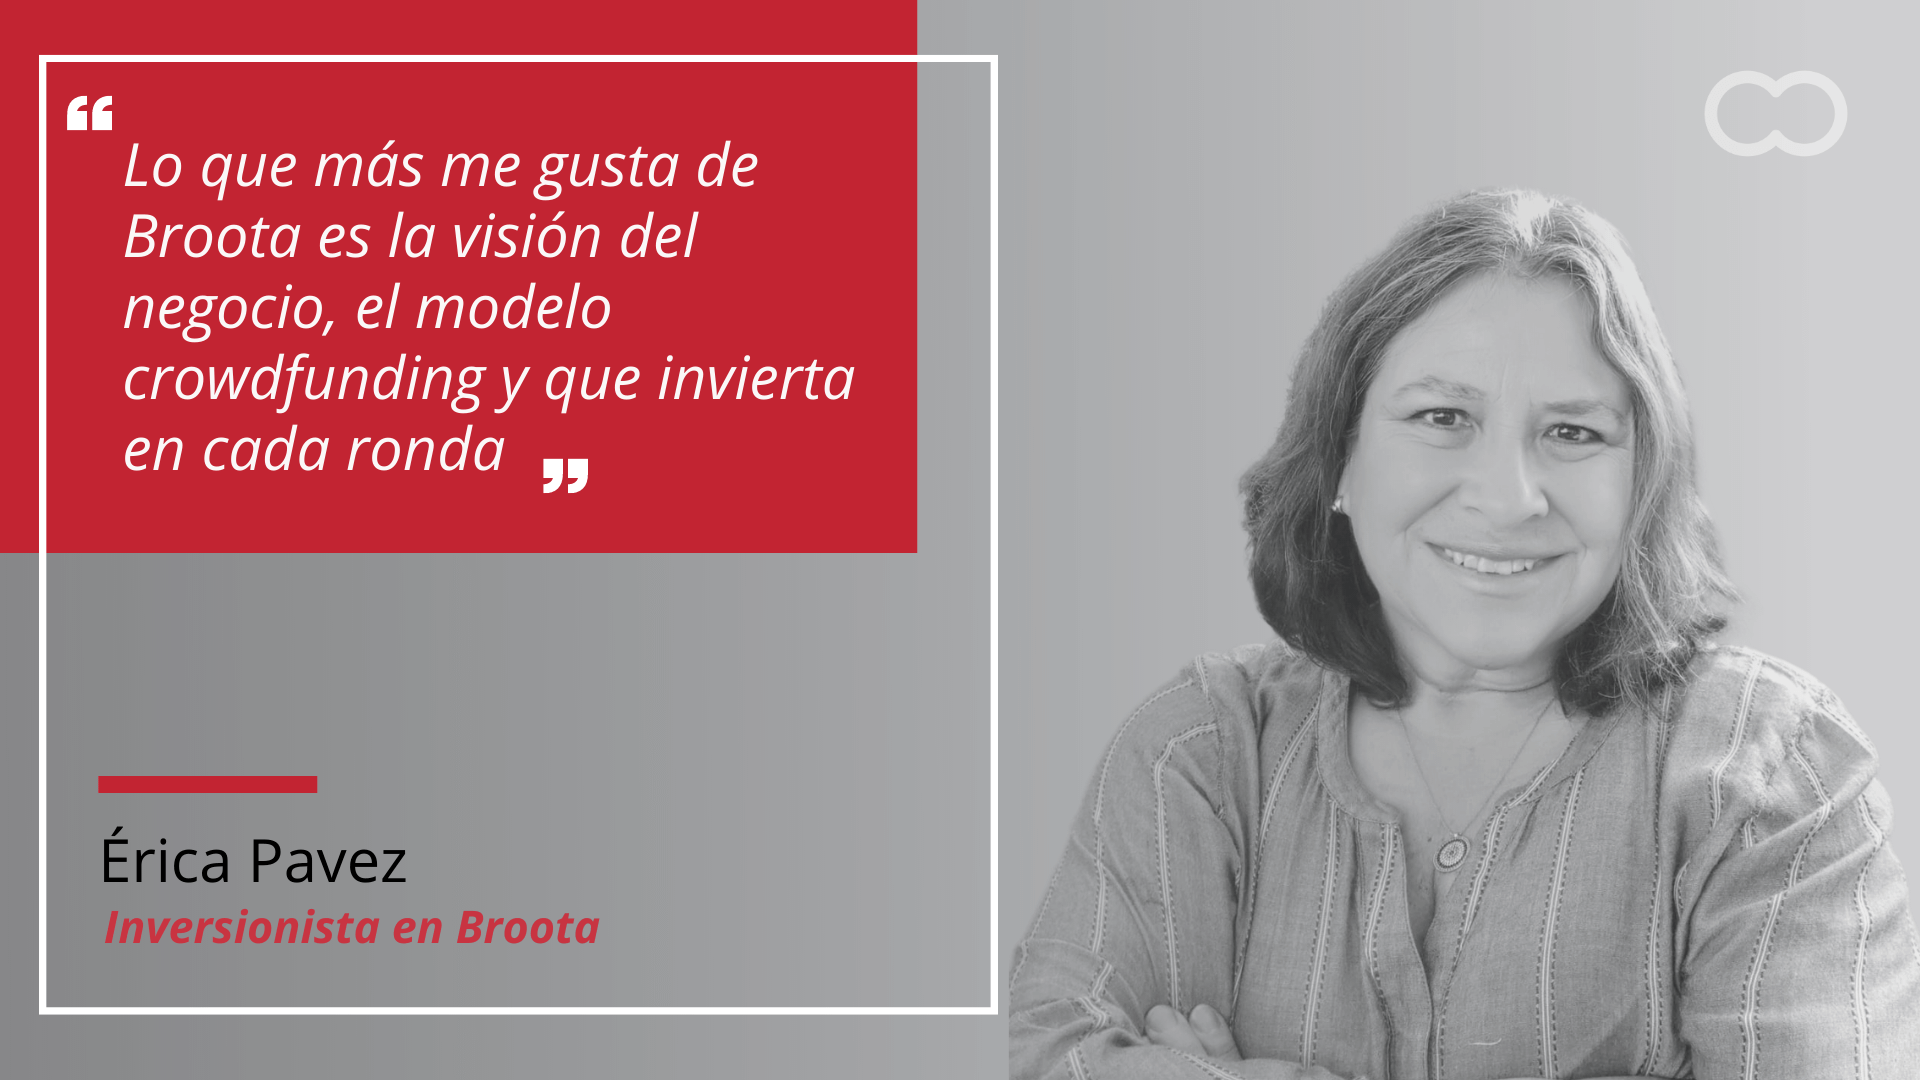 Erica Pavez, inversionista en Broota: “Lo que más me gusta de Broota es la visión de negocio, el modelo crowdfunding y que invierta en cada ronda”